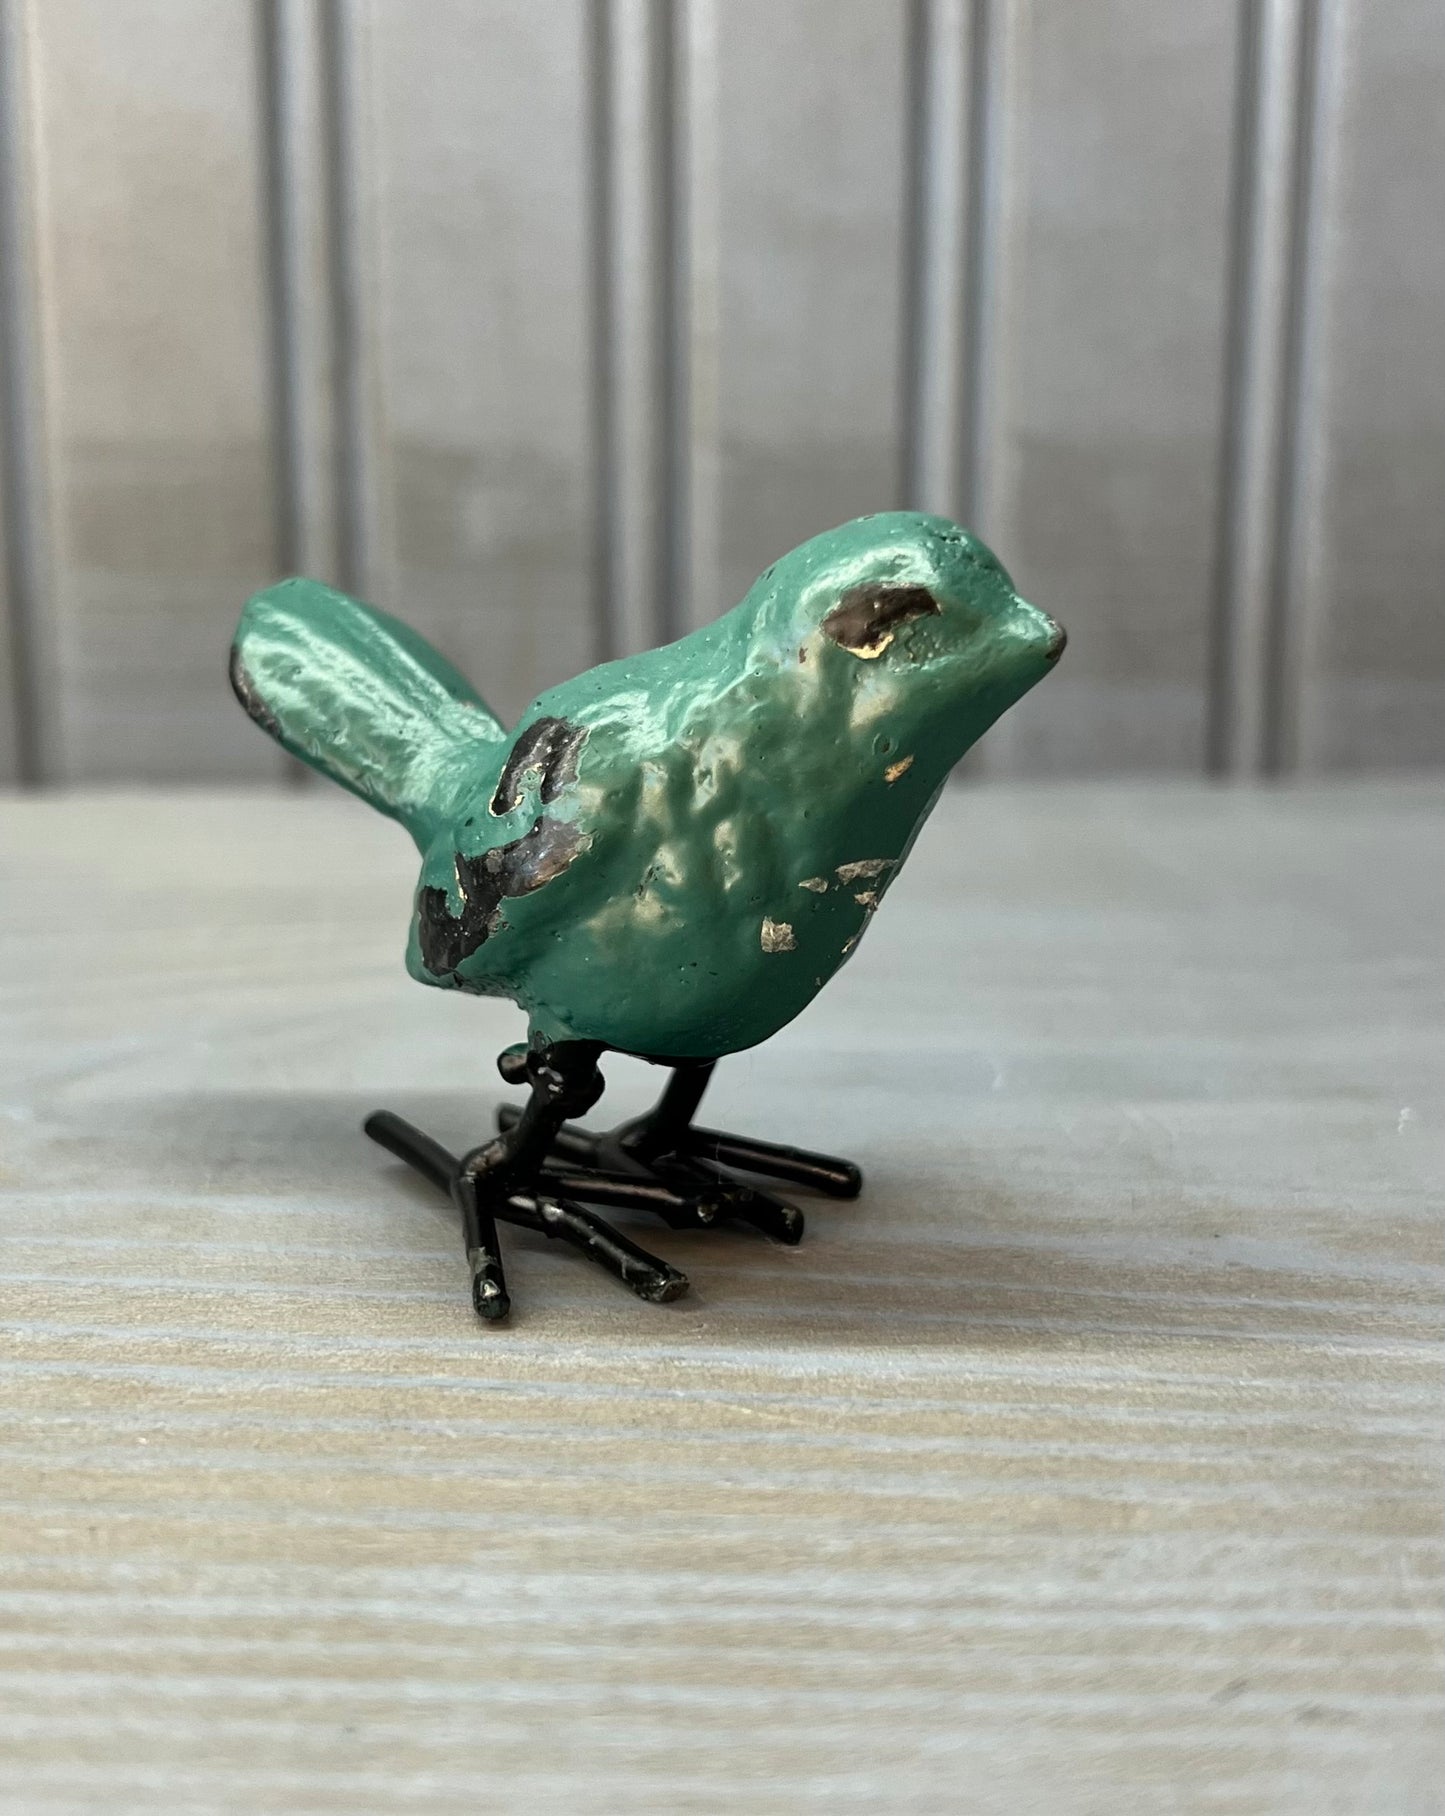 Mini Bird-Gift > Home & Garden > Decor > Figurines-Apricot-Quinn's Mercantile